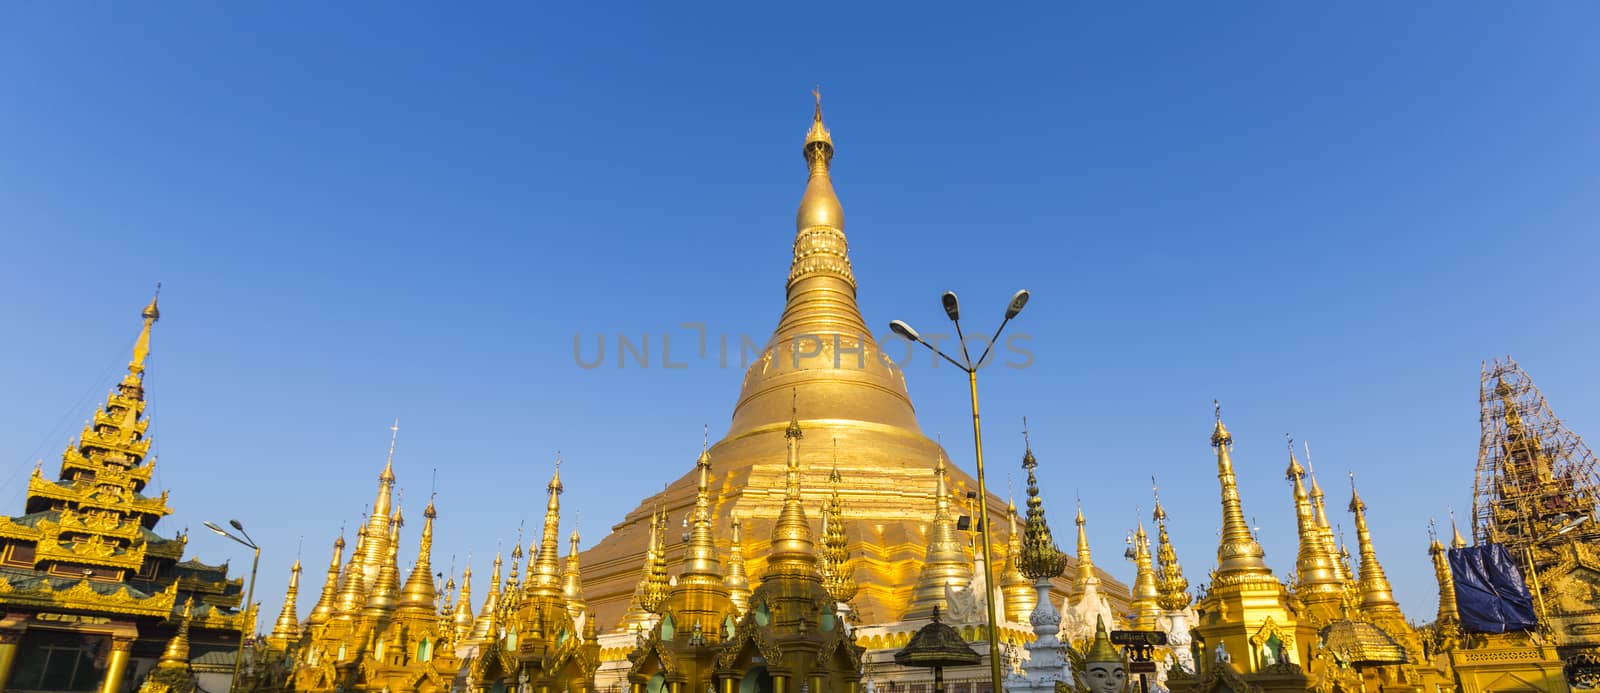 Panorama of Shwedagon pagoda with blue sky. Yangon. Myanmar or Burma.